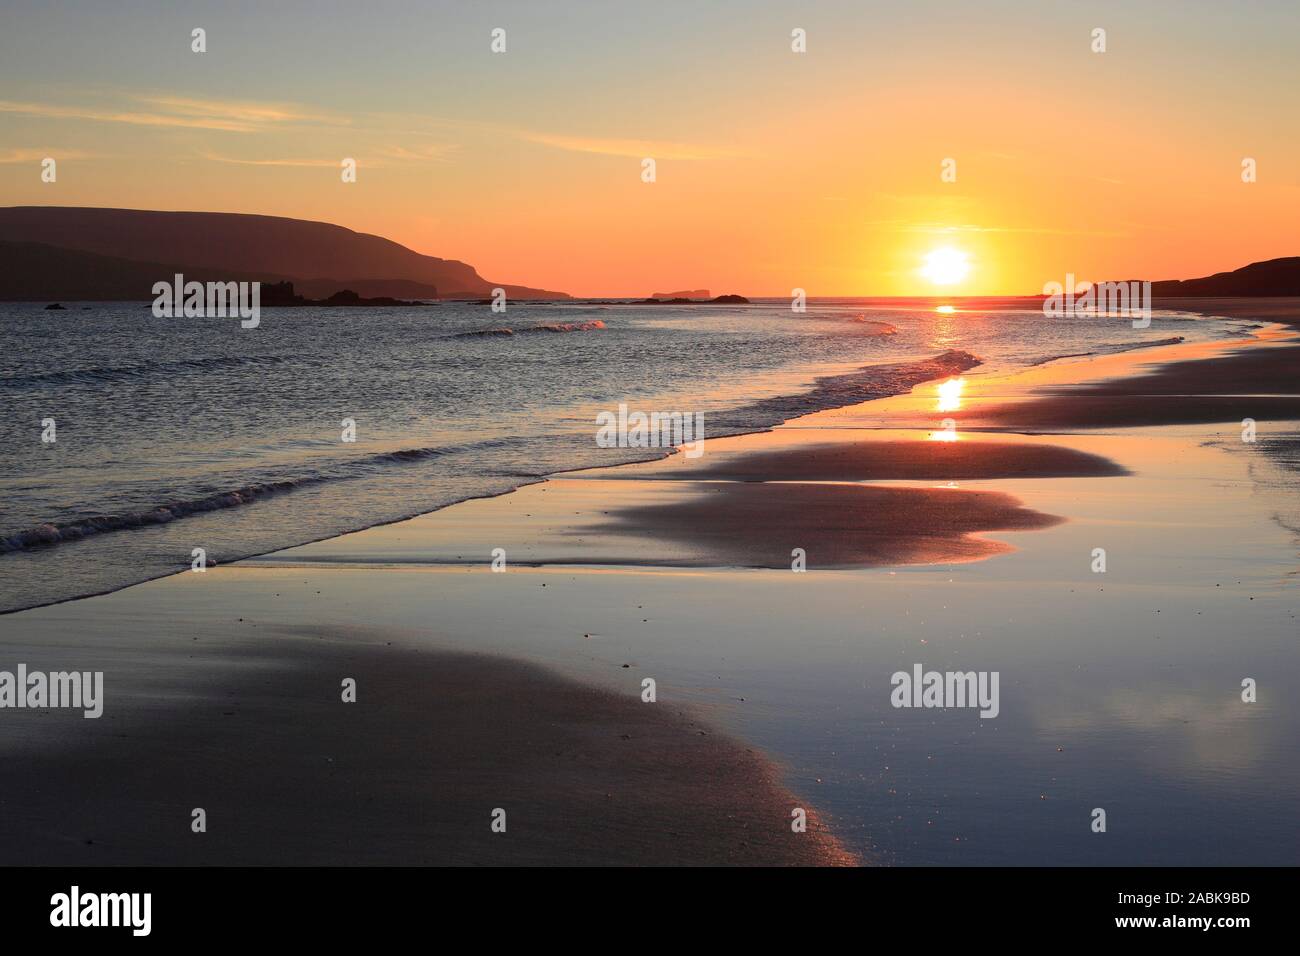 Playa de arena (Balnakeil Bay) en la costa escocesa cerca de Durness. Escocia Foto de stock